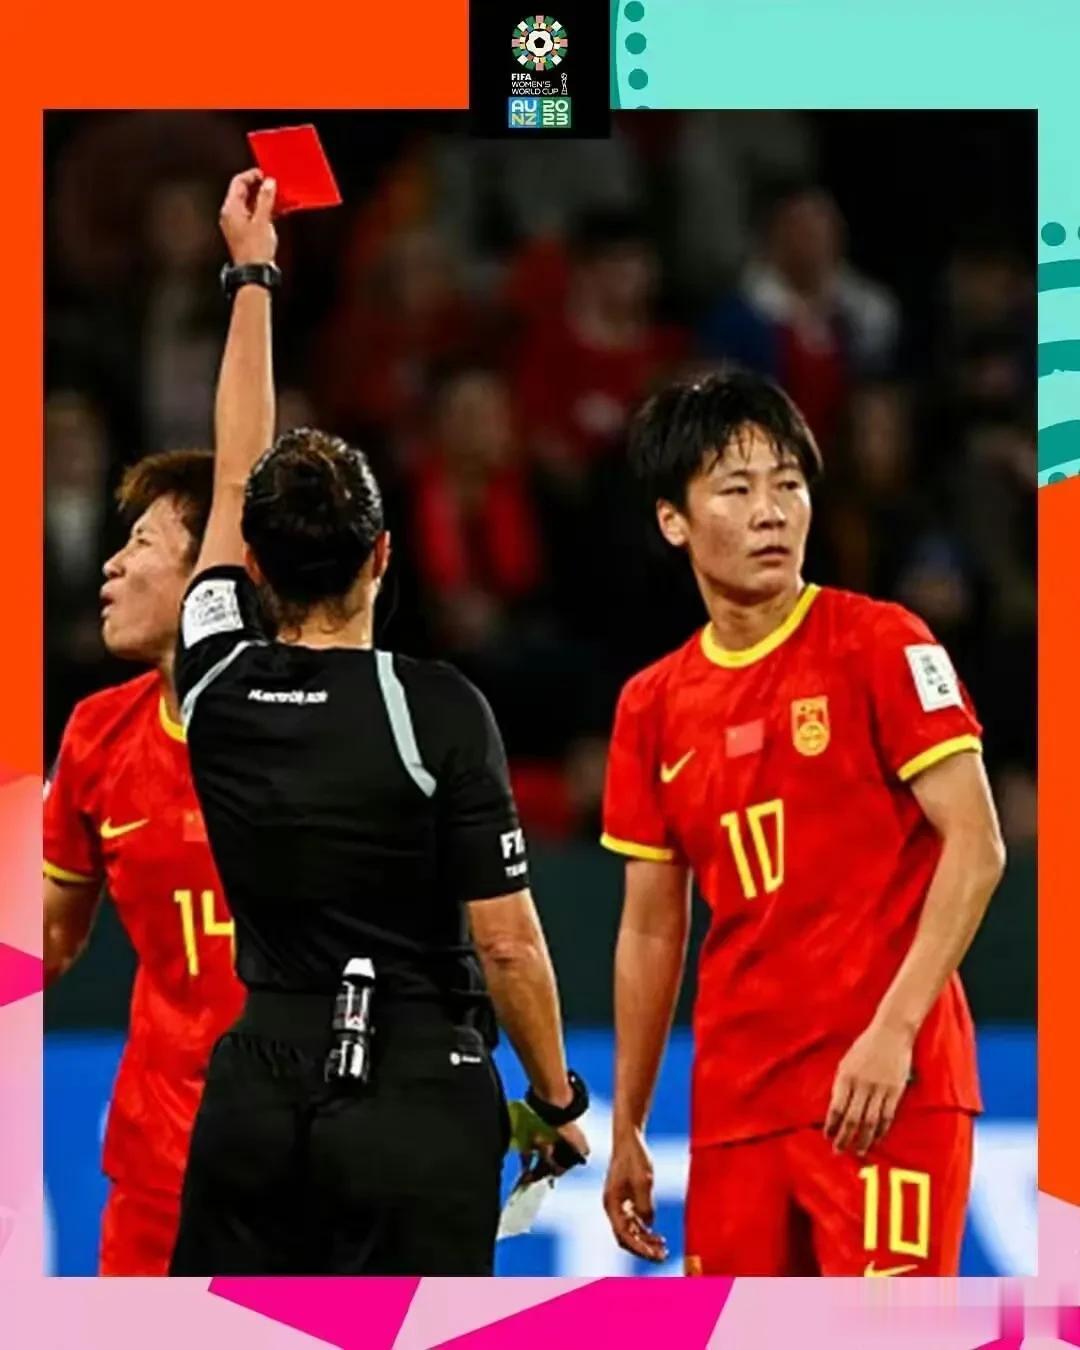 她这一脚，把中国女足出线机会踢没了！
中国女足10号张睿在世界杯第二场小组赛中蹬